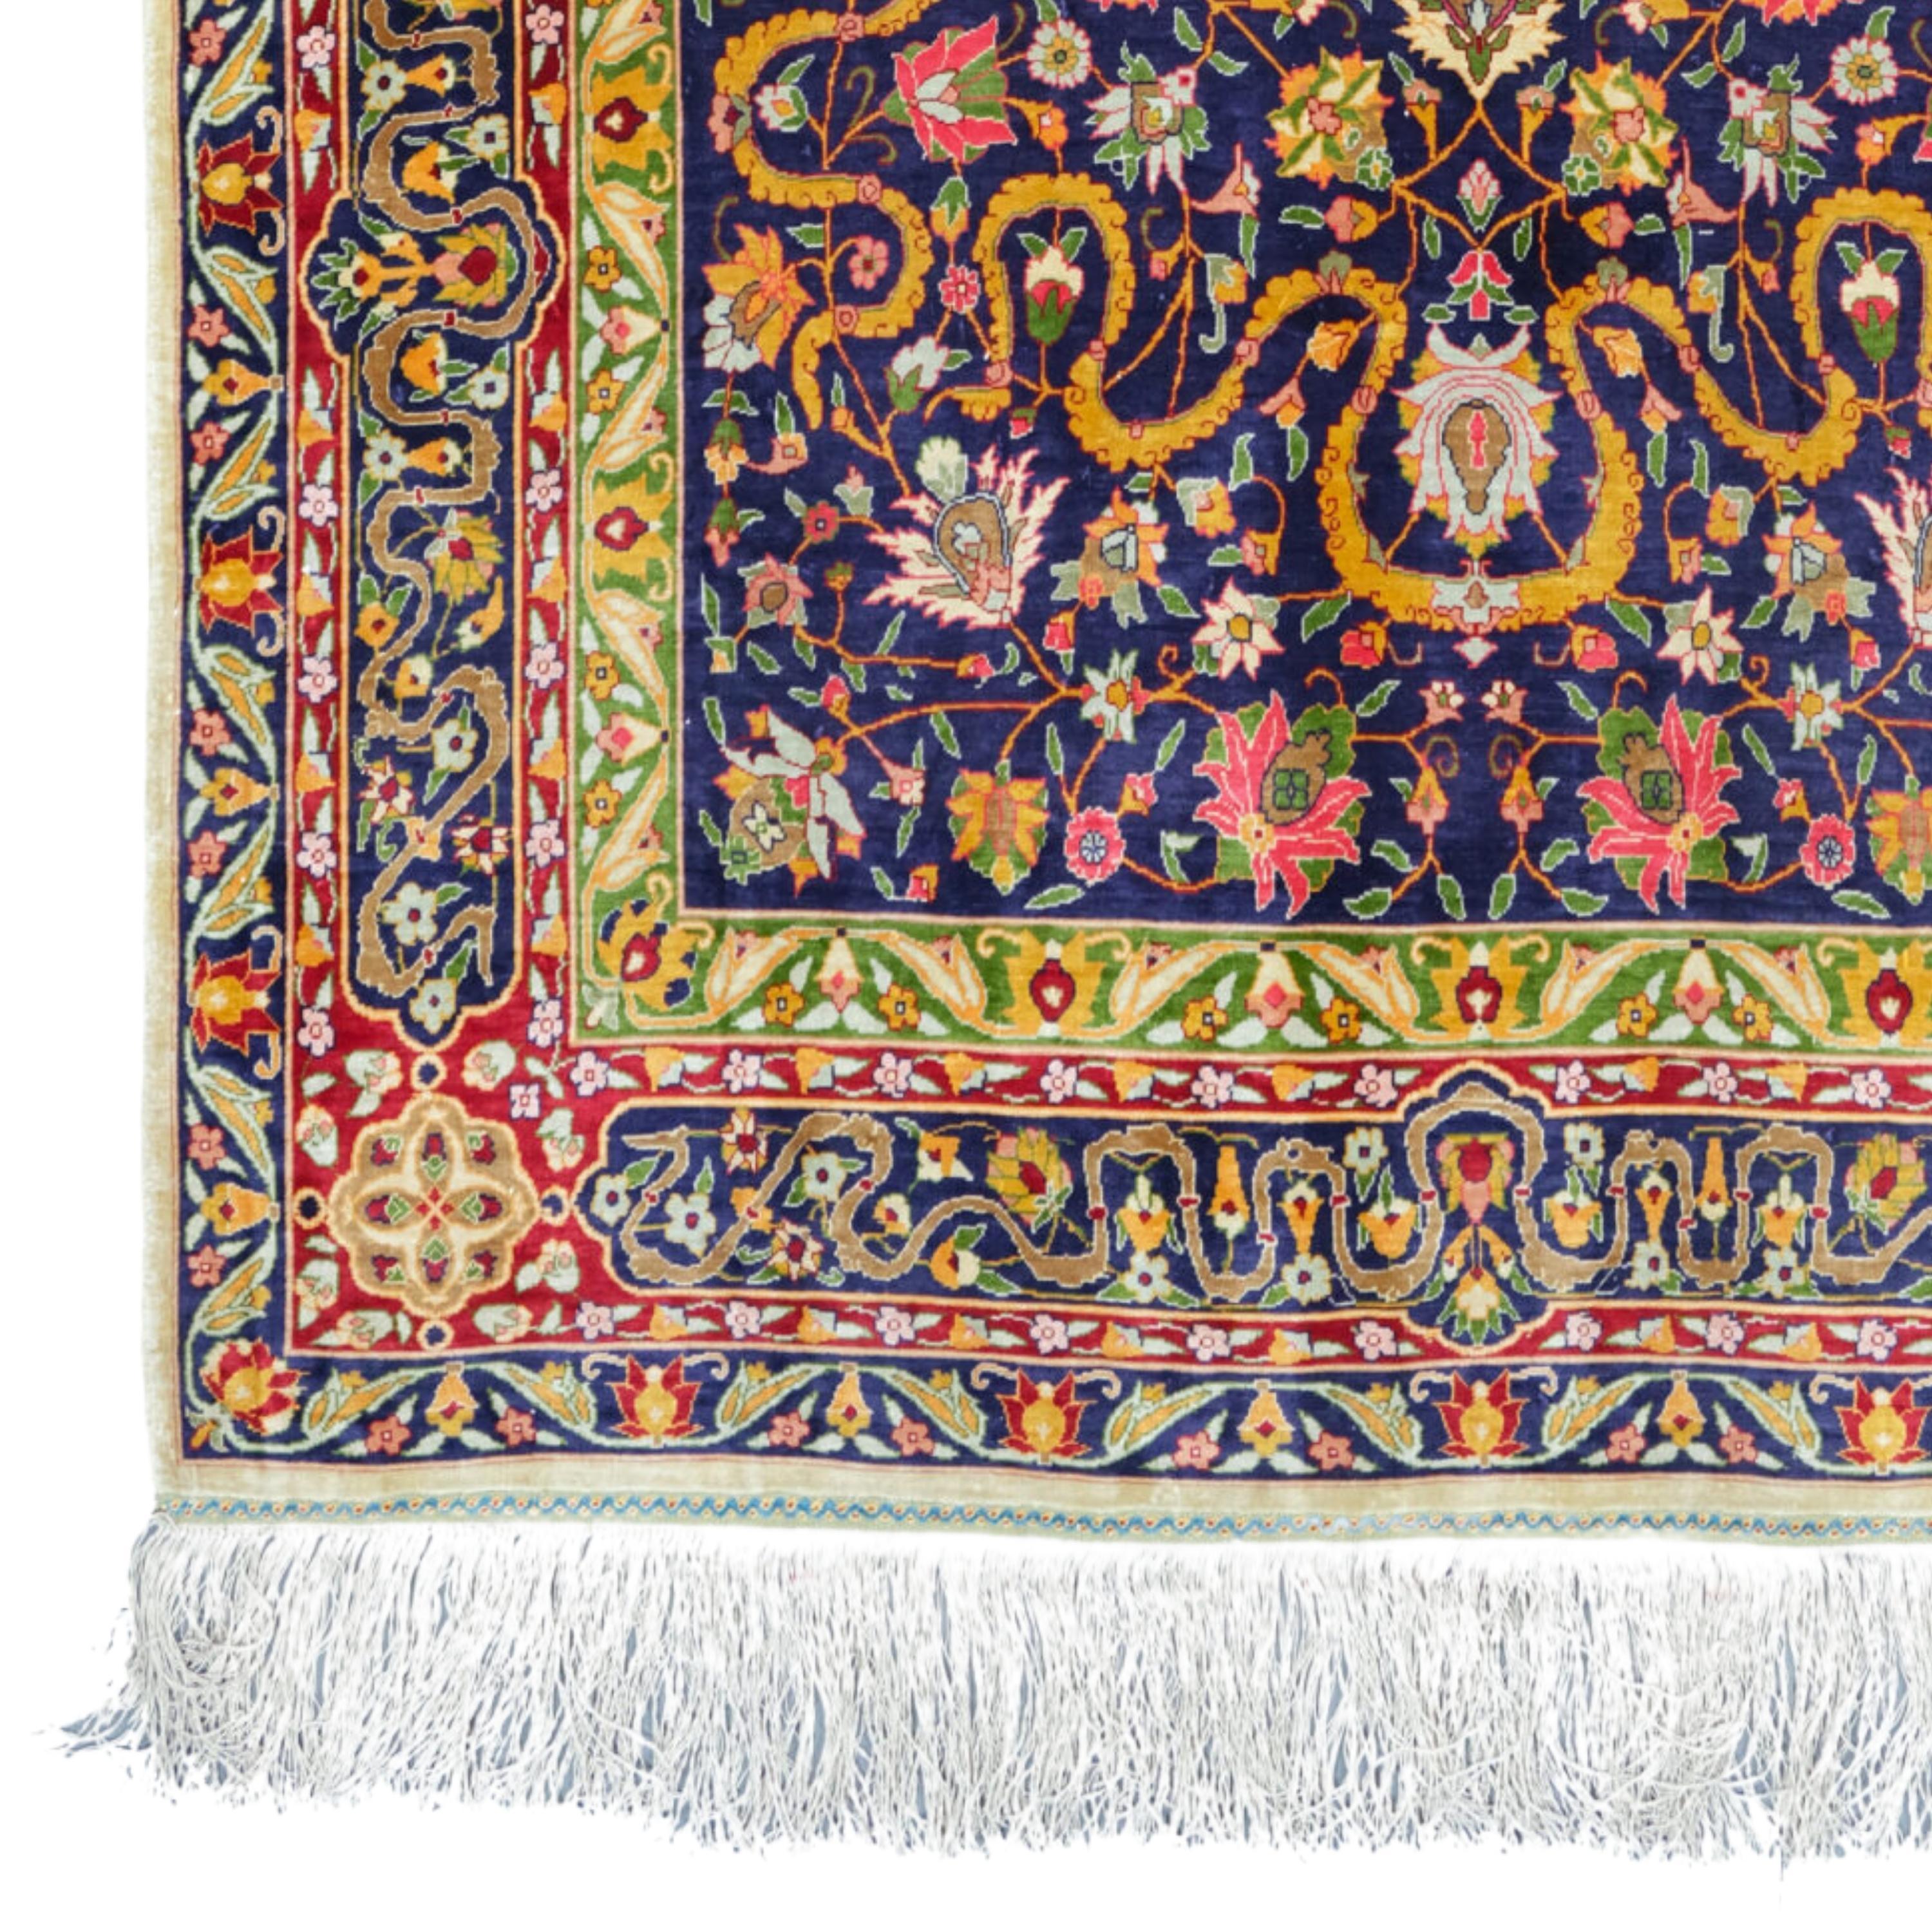 Antique Hereke Silk Rug - Turkish Silk Hereke Carpet Late 20th Century 100x165 cm (39,3 x 64,9 In)

Hereke carpet, floor covering woven by hand in imperial workshops established in Hereke, approximately 64 km east of Istanbul, in the late 19th